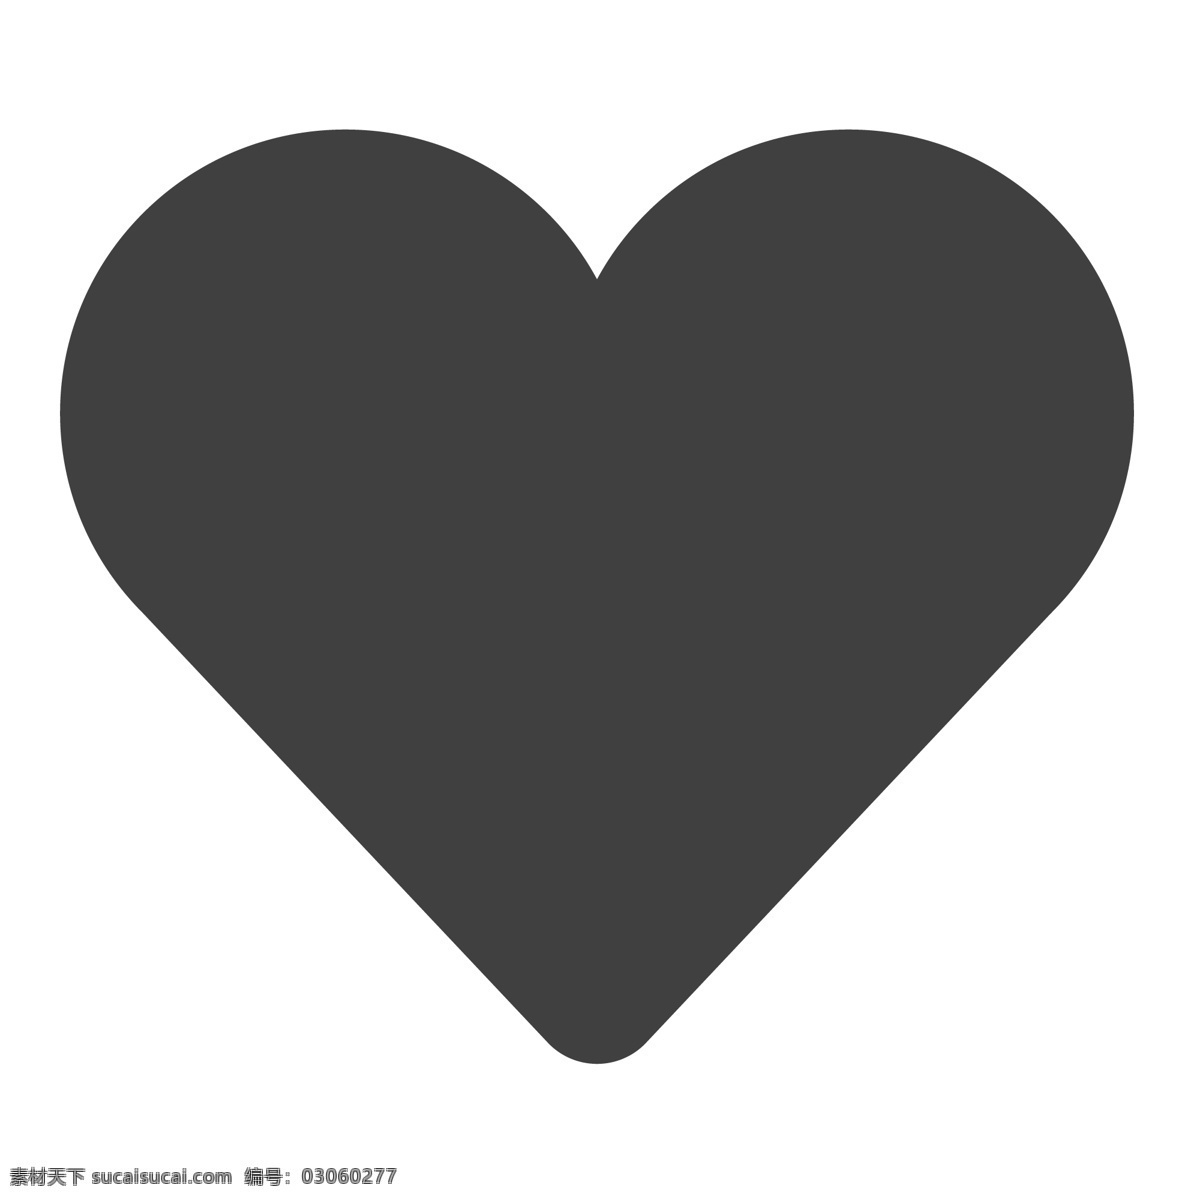 红心图标设计 爱心 红心 卡通 生活图标 卡通图标 黑色的图标 手机图标 智能图标设计